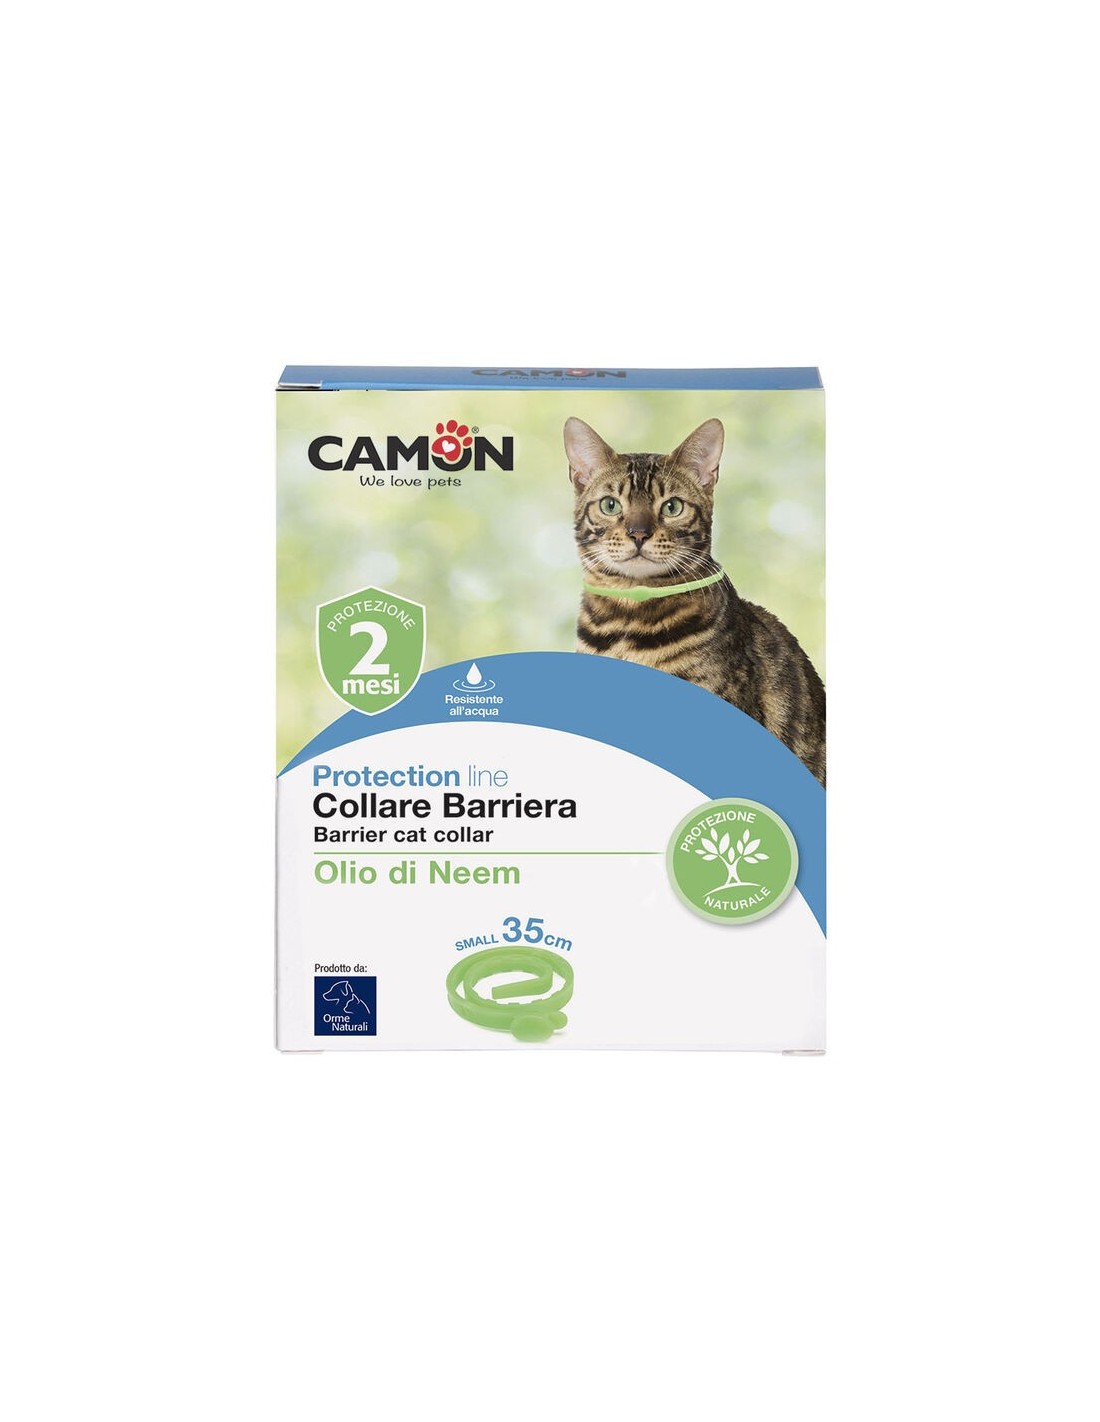 Camon - Collare Barriera all'Olio di Neem - per gatti